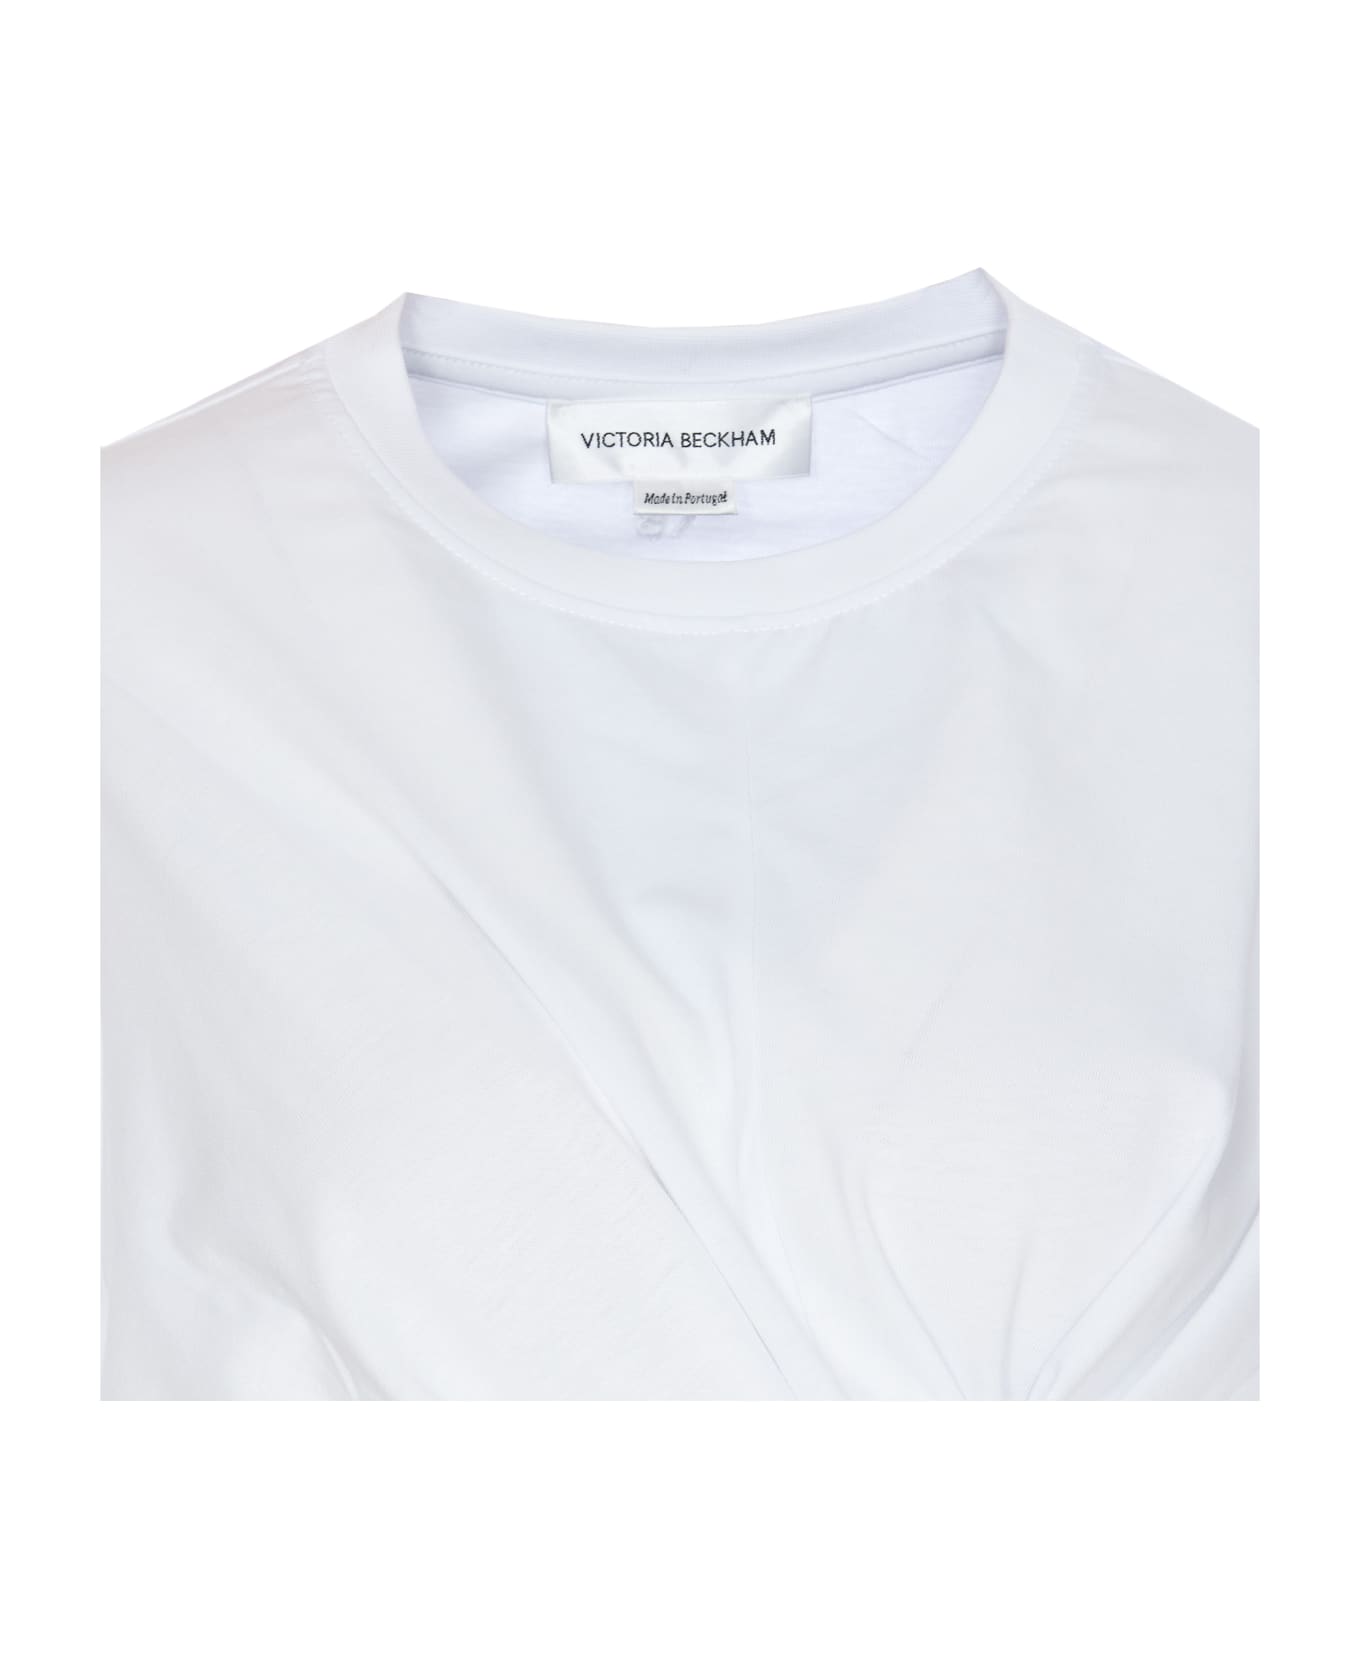 Victoria Beckham Body Twist T-shirt - White